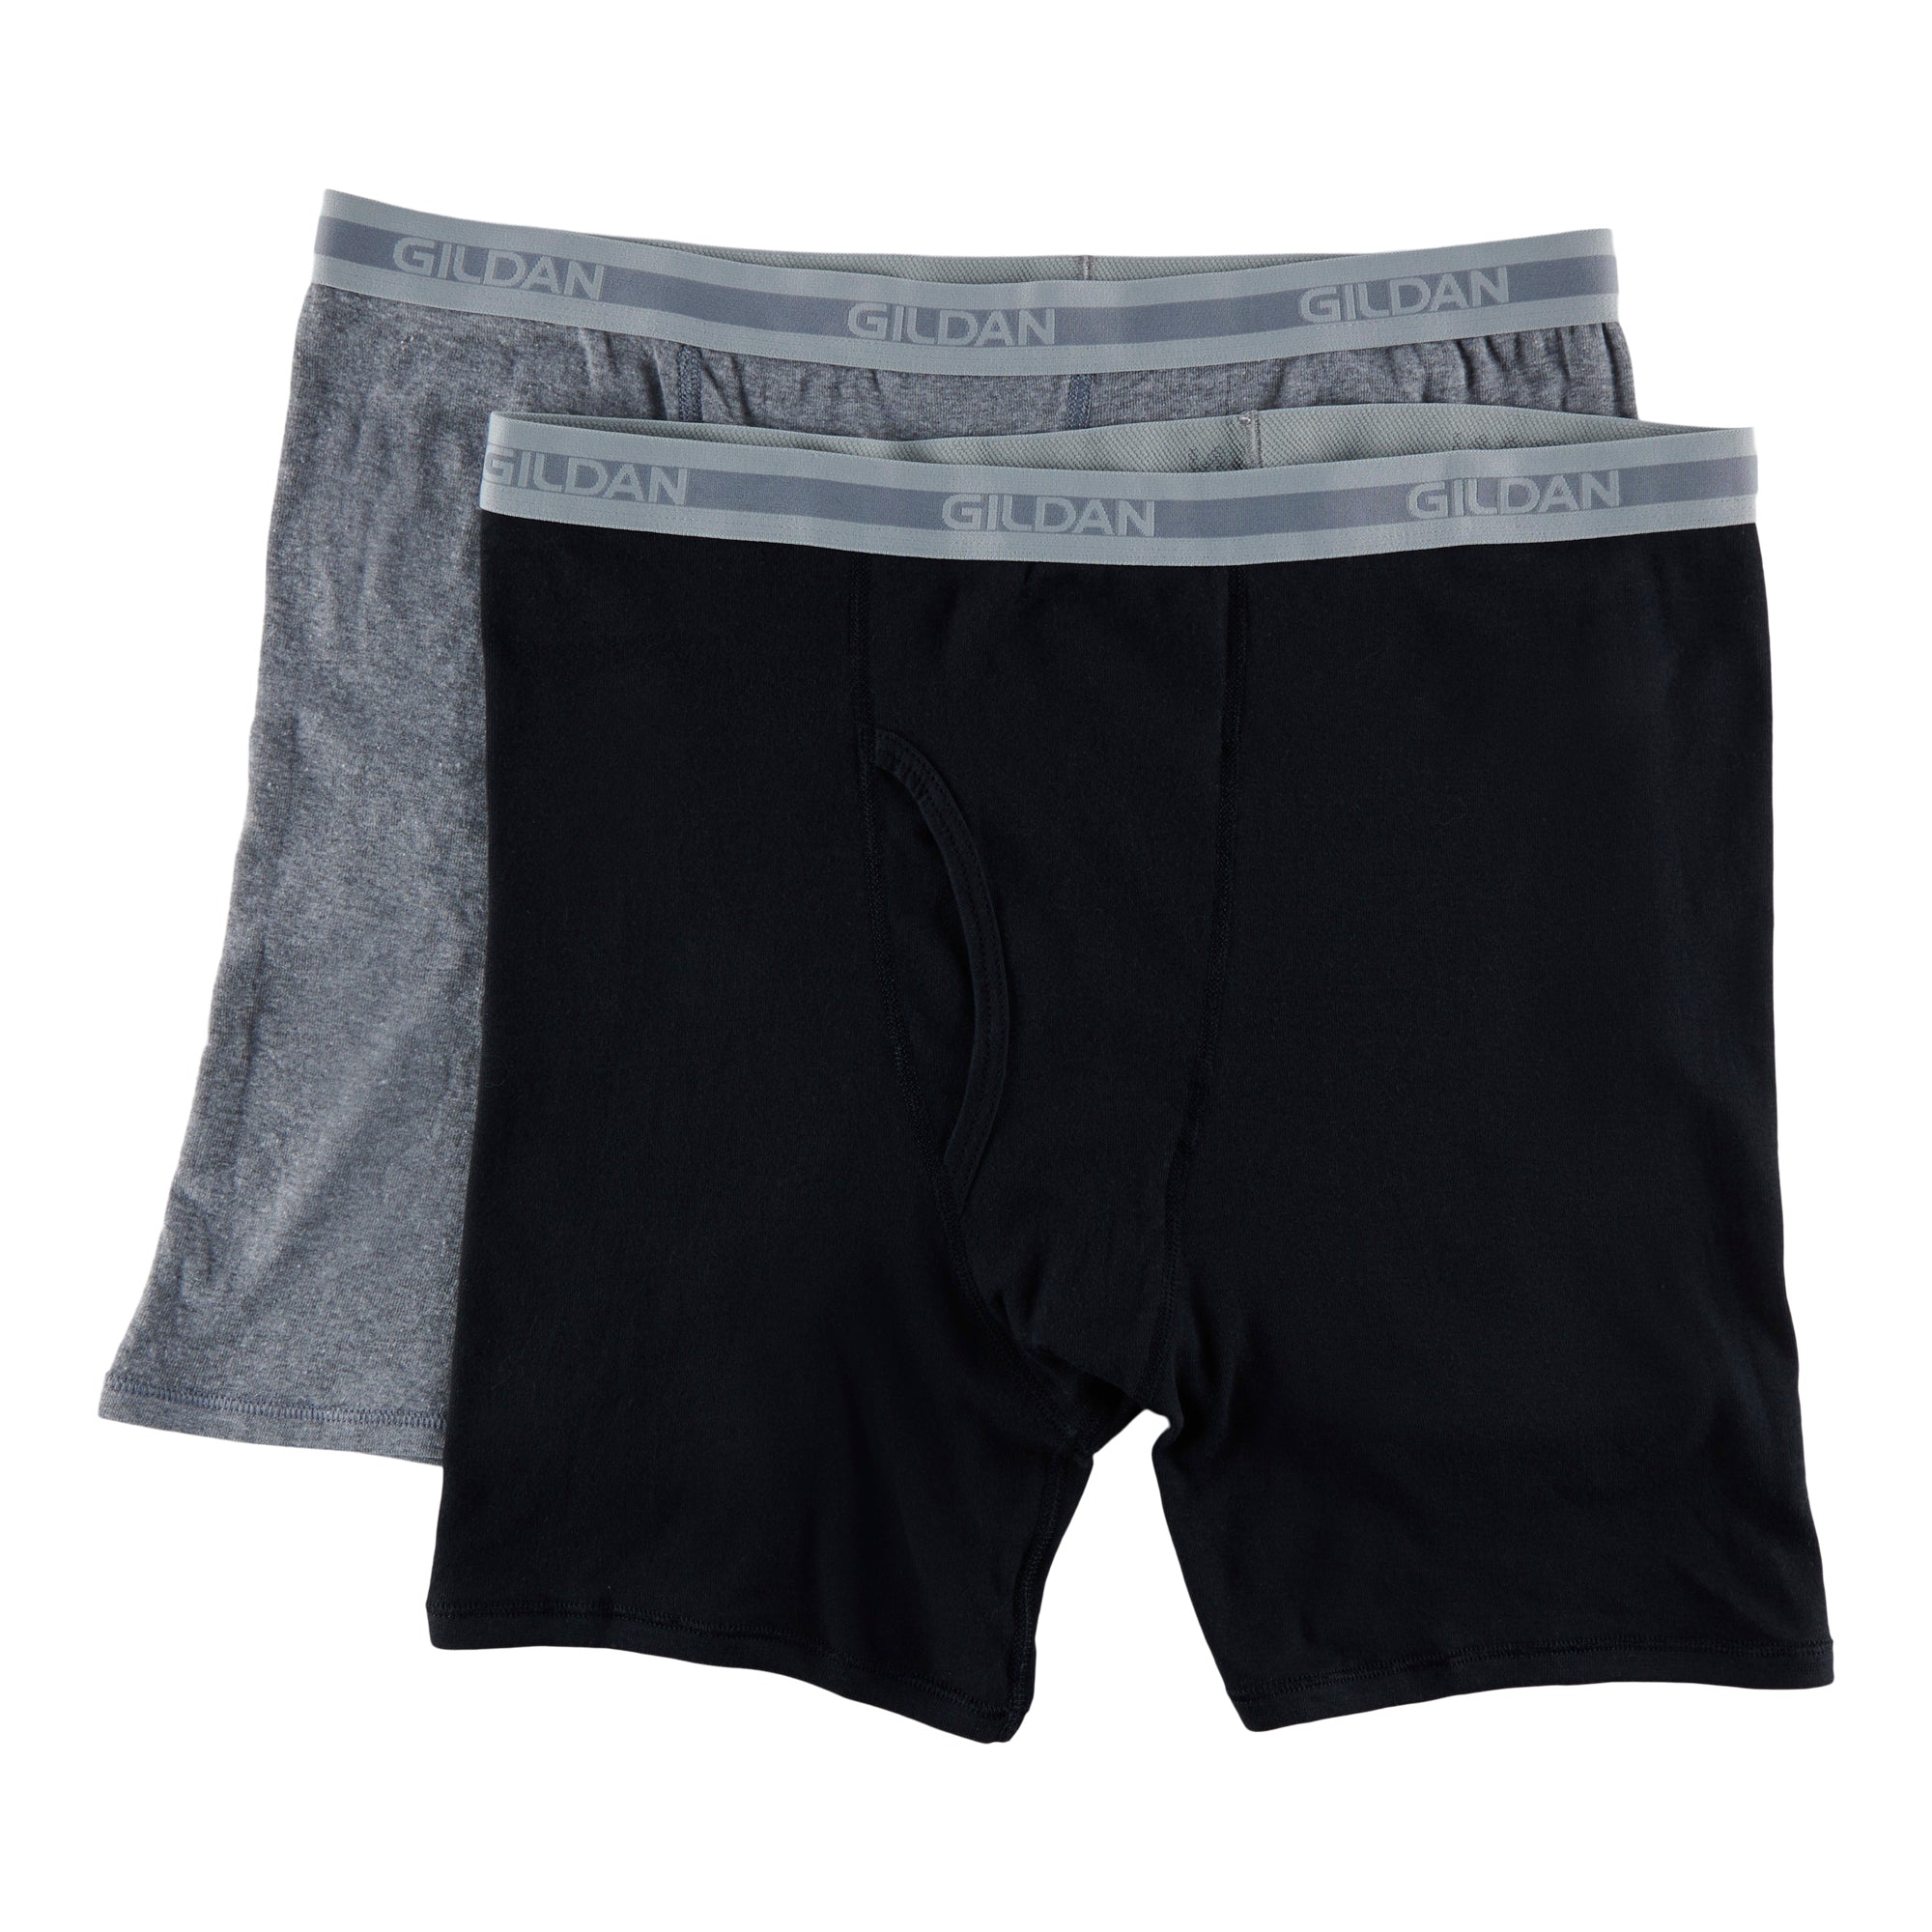 Gildan Men's Underwear Boxer Briefs, Multipack, Charcoal/Navy